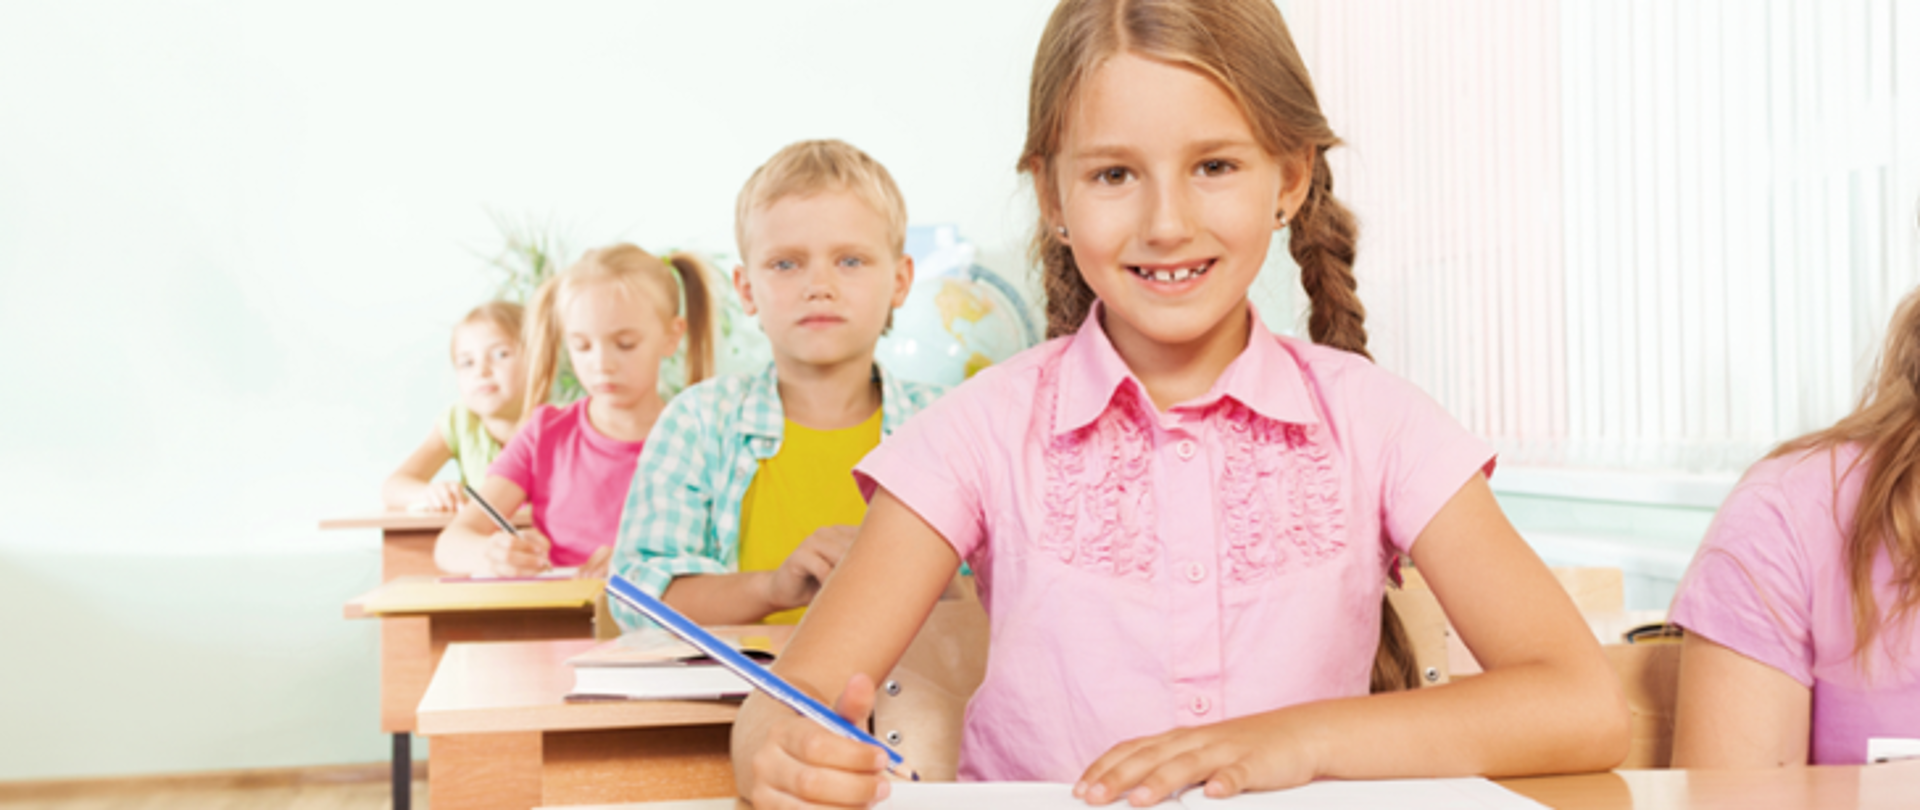 Zdjęcie przedstawia uczniów młodszych klas szkoły podstawowej siedzących w ławkach i trzymających ołówki. Na pierwszym planie jest dziewczynka z warkoczami i różową koszulą. 